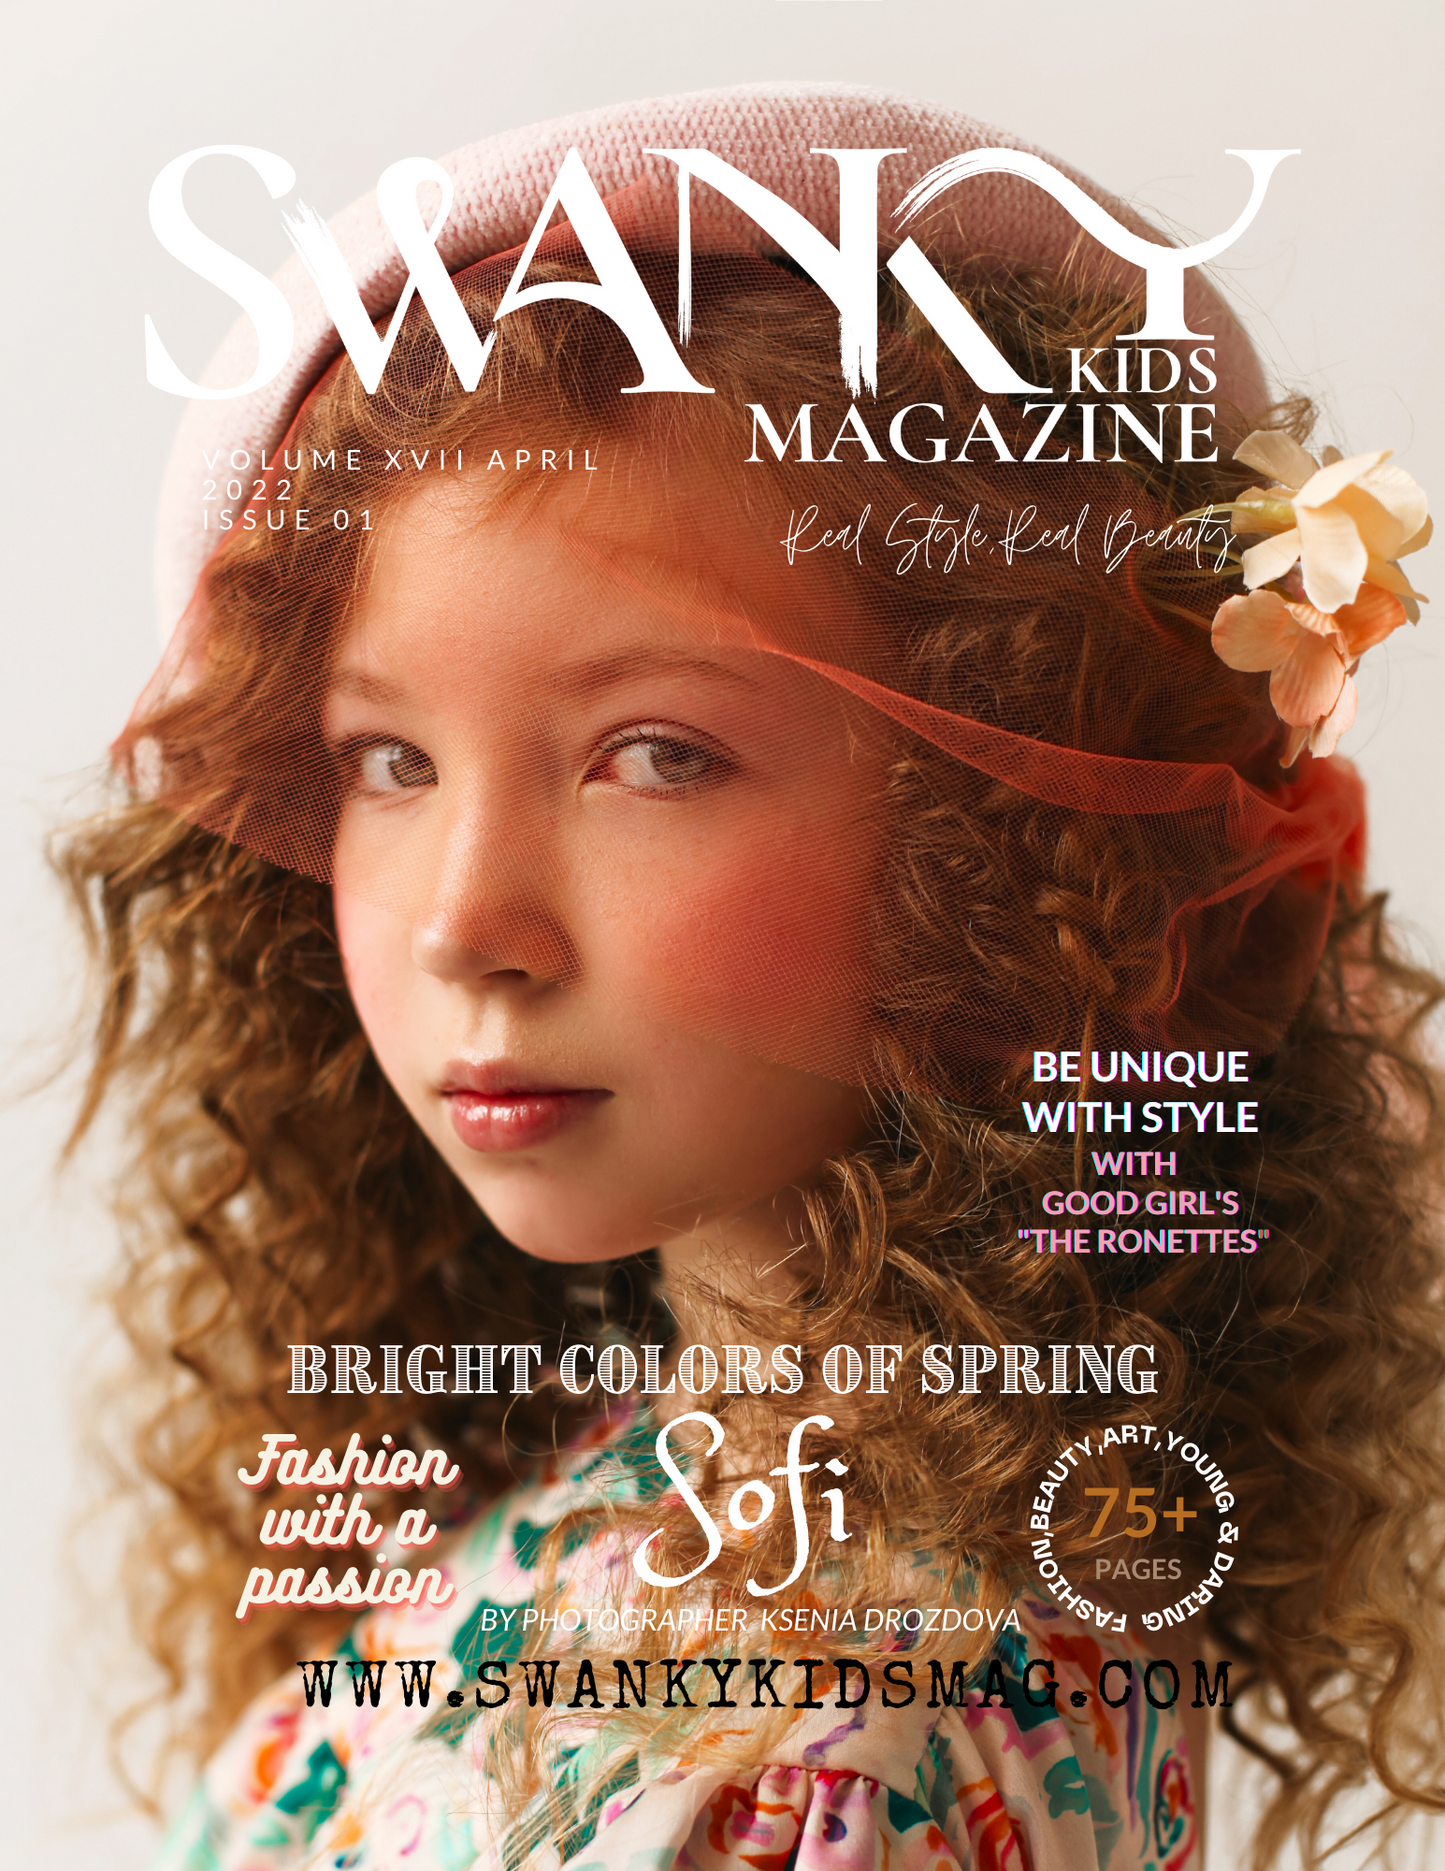 Swanky Kids Magazine APRIL 2022 VOL XVII Issue 1